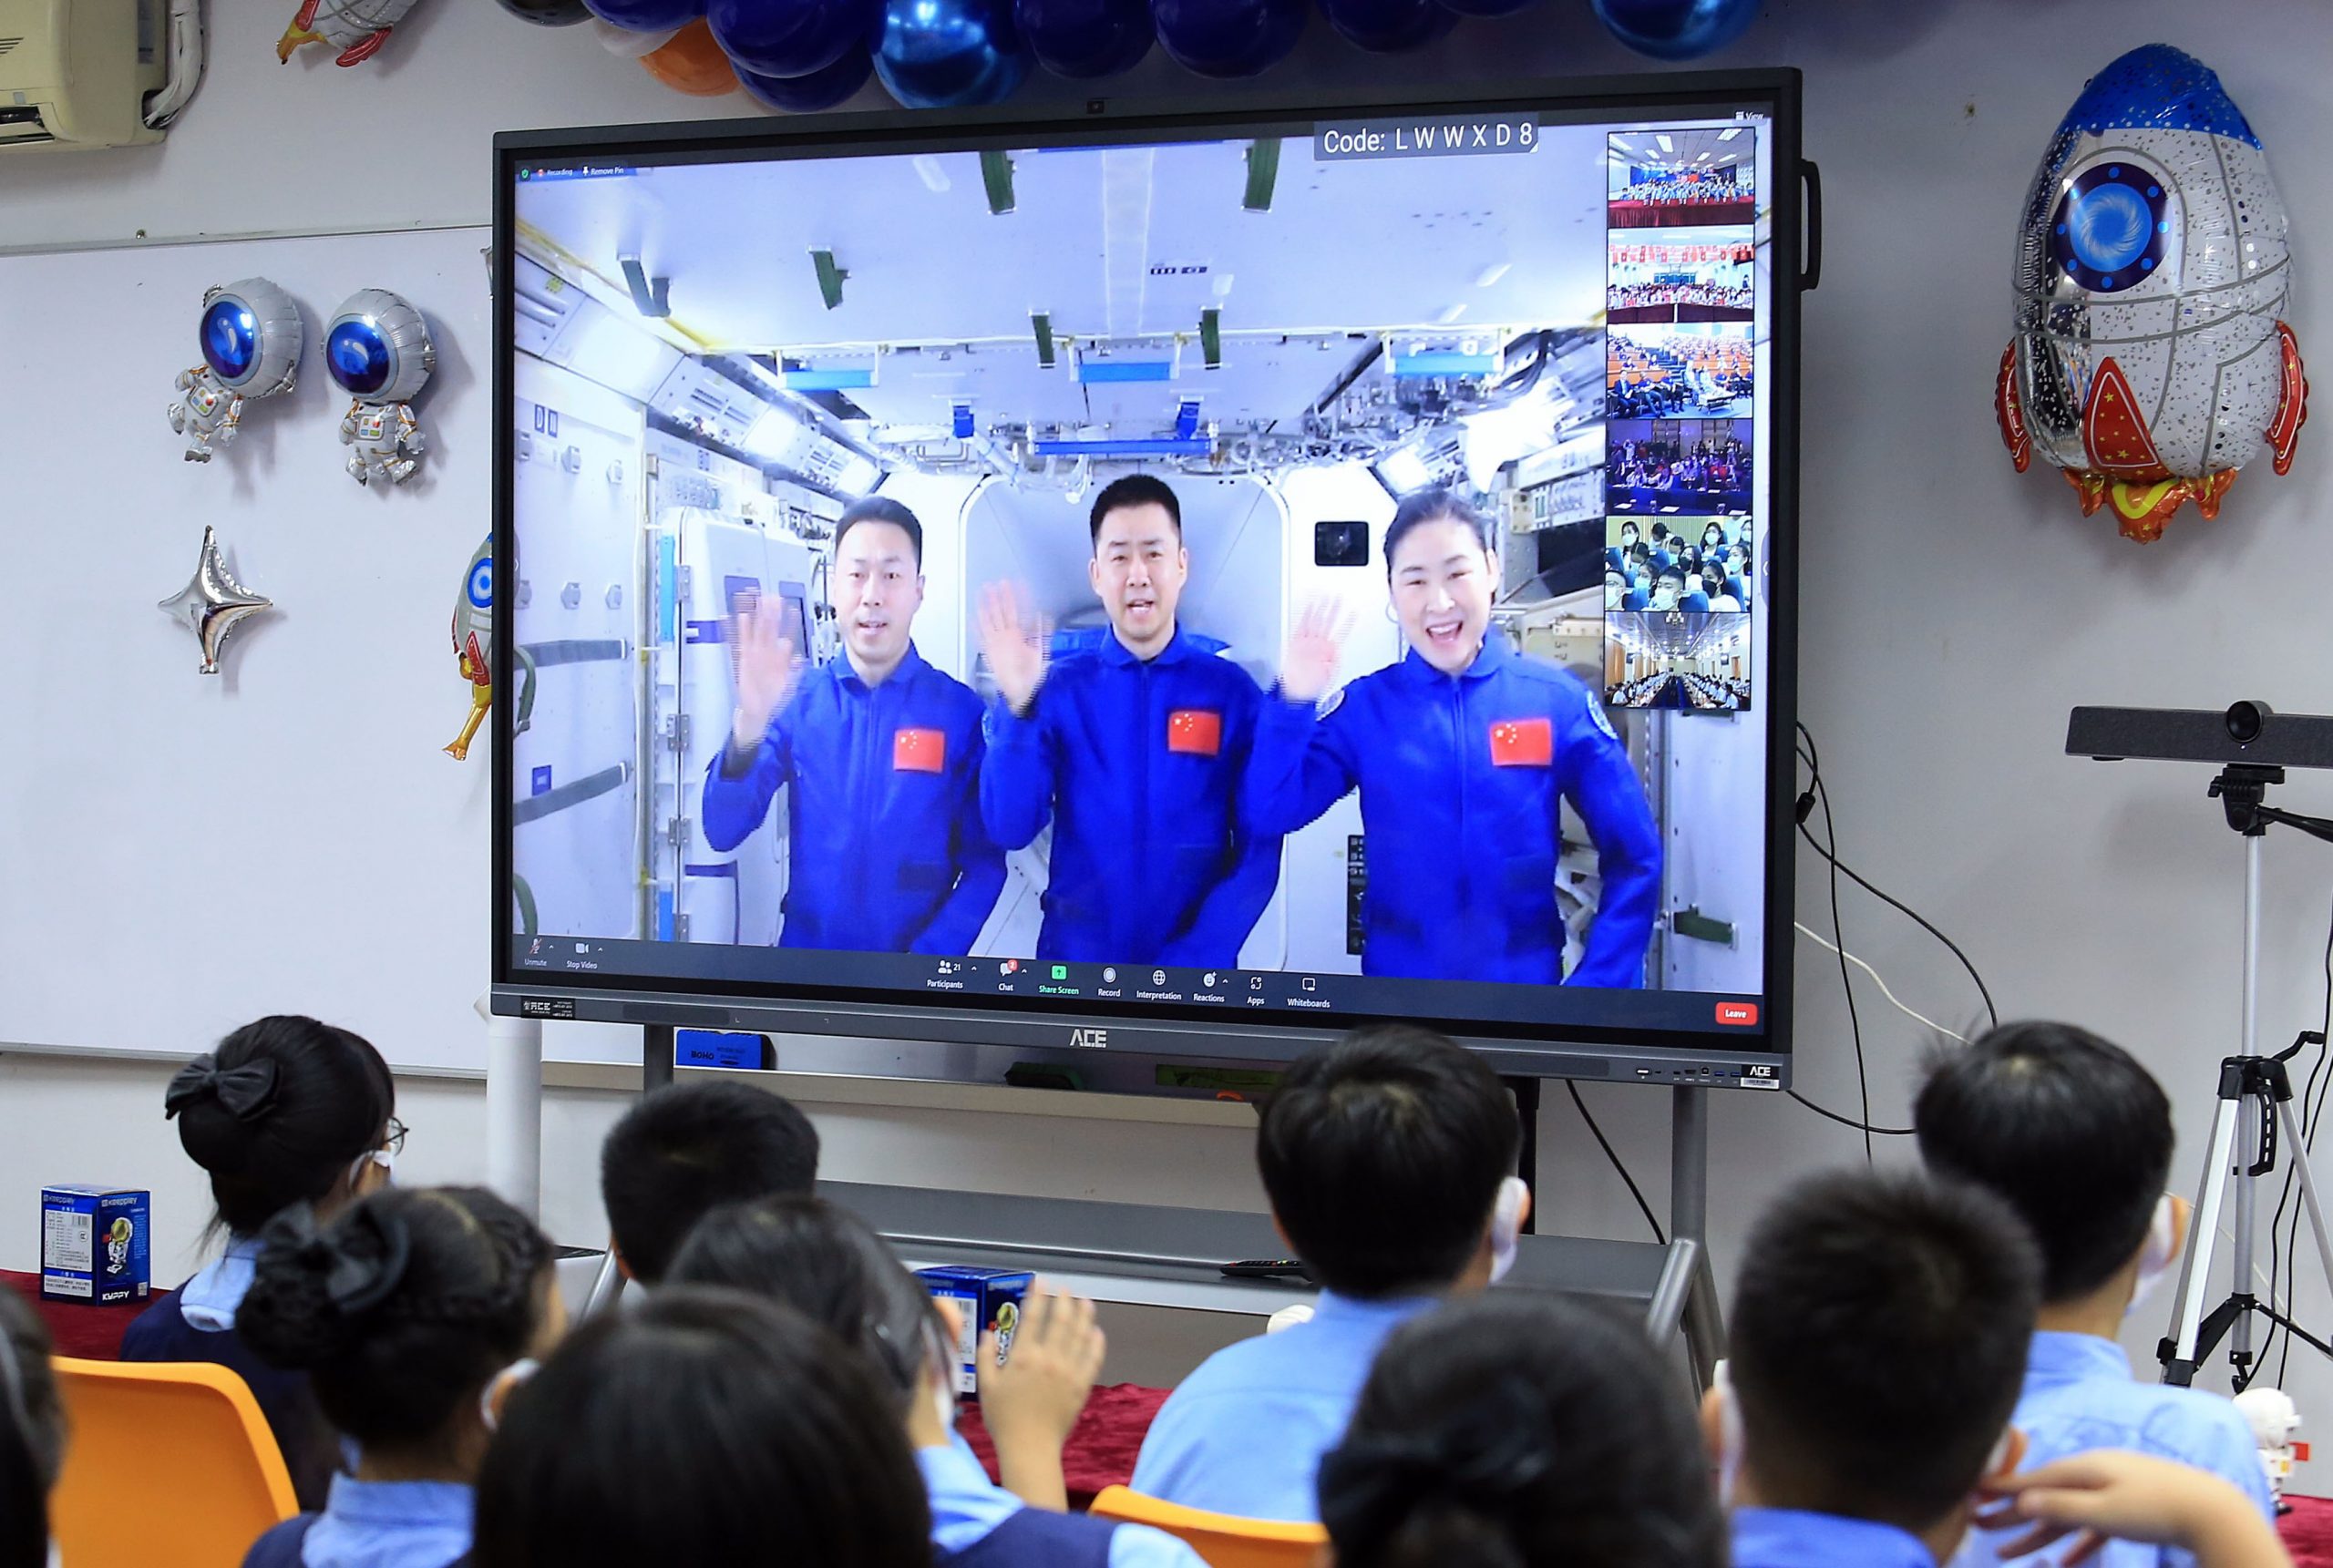 “天宫对话”东盟青少年向中国航天员发问